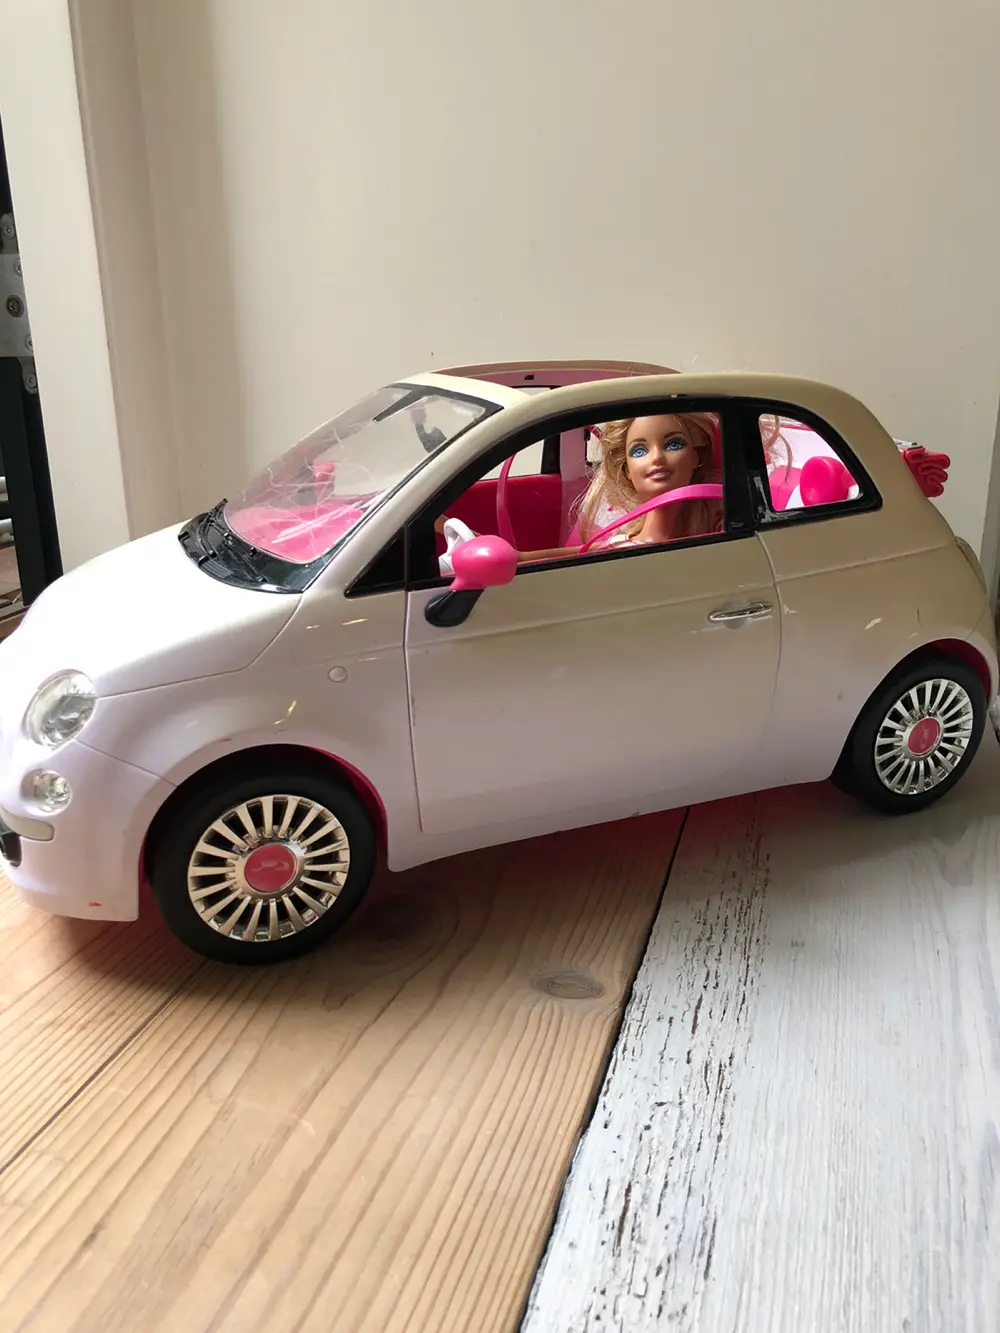 Køb Barbie Bil af Lea Reshopper · Shop til børn, og bolig